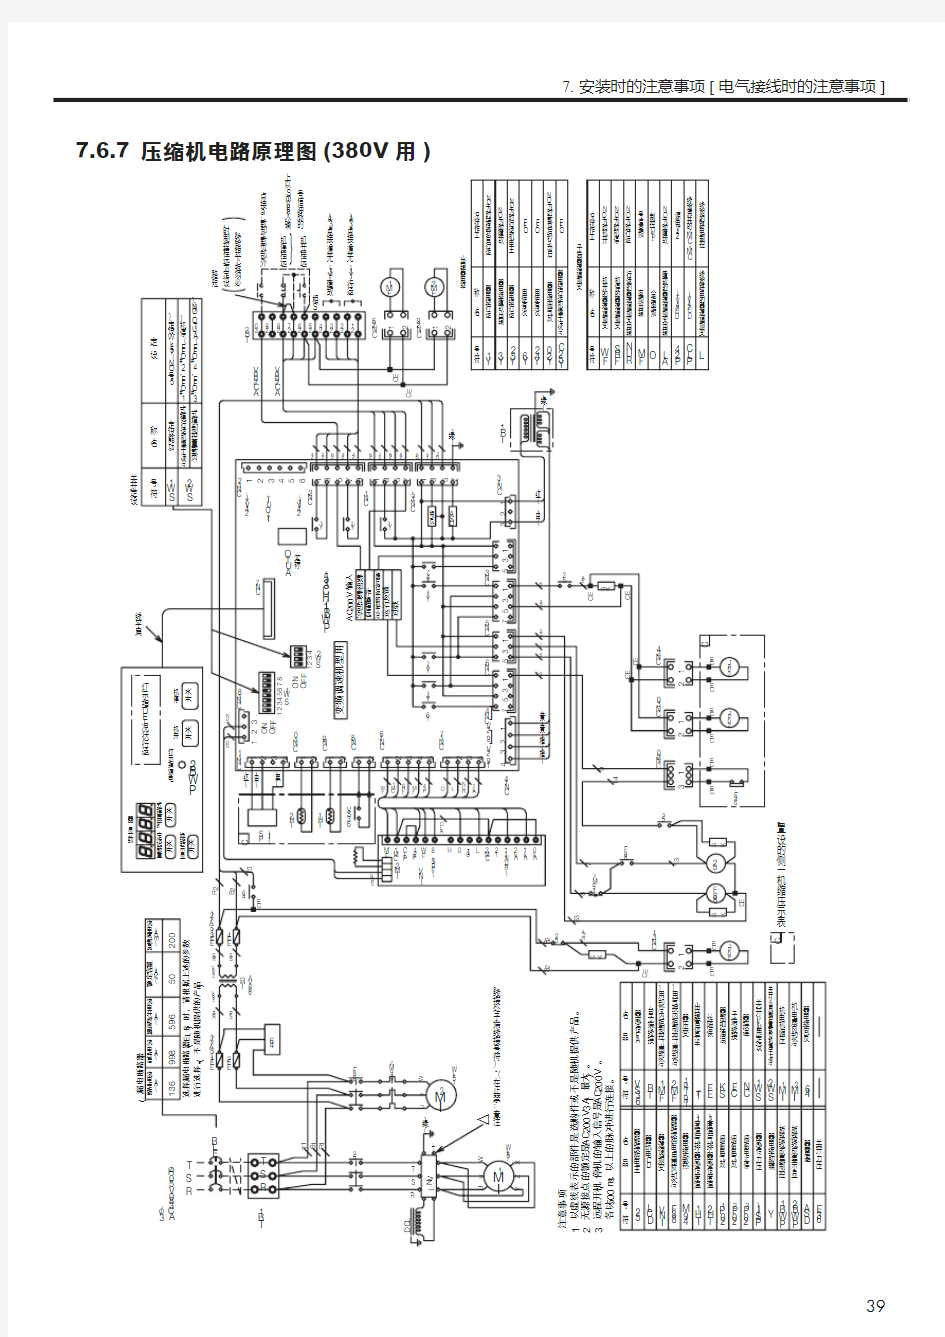 01-日立OSP75VAL1变频空压机说明书-电路图页